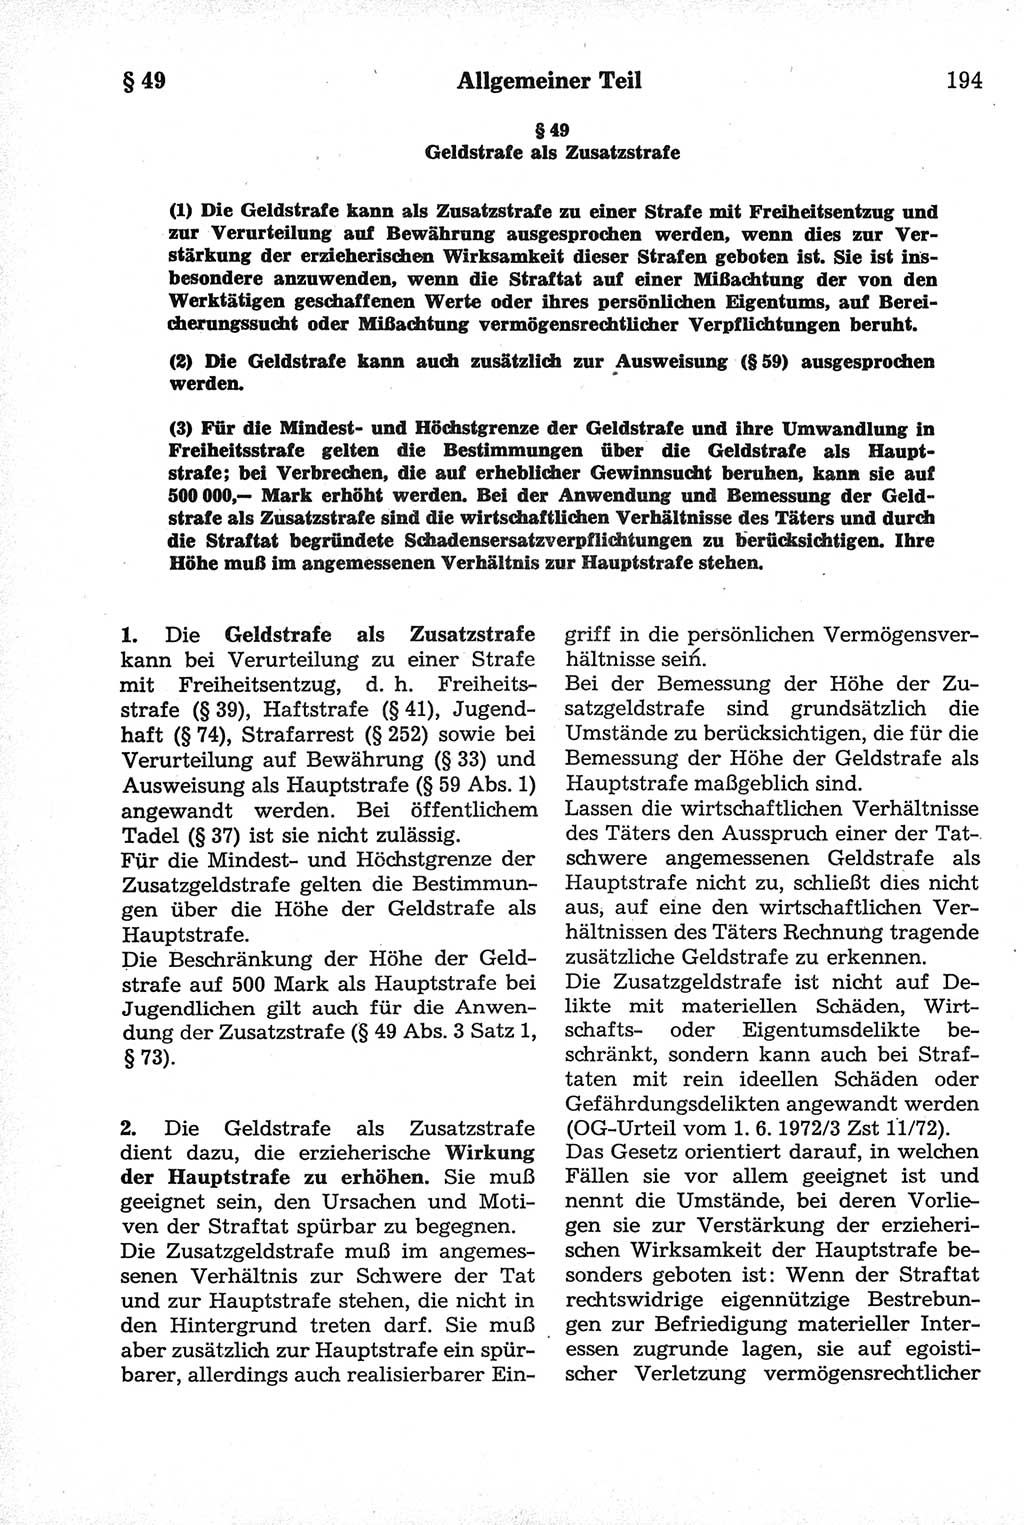 Strafrecht der Deutschen Demokratischen Republik (DDR), Kommentar zum Strafgesetzbuch (StGB) 1981, Seite 194 (Strafr. DDR Komm. StGB 1981, S. 194)